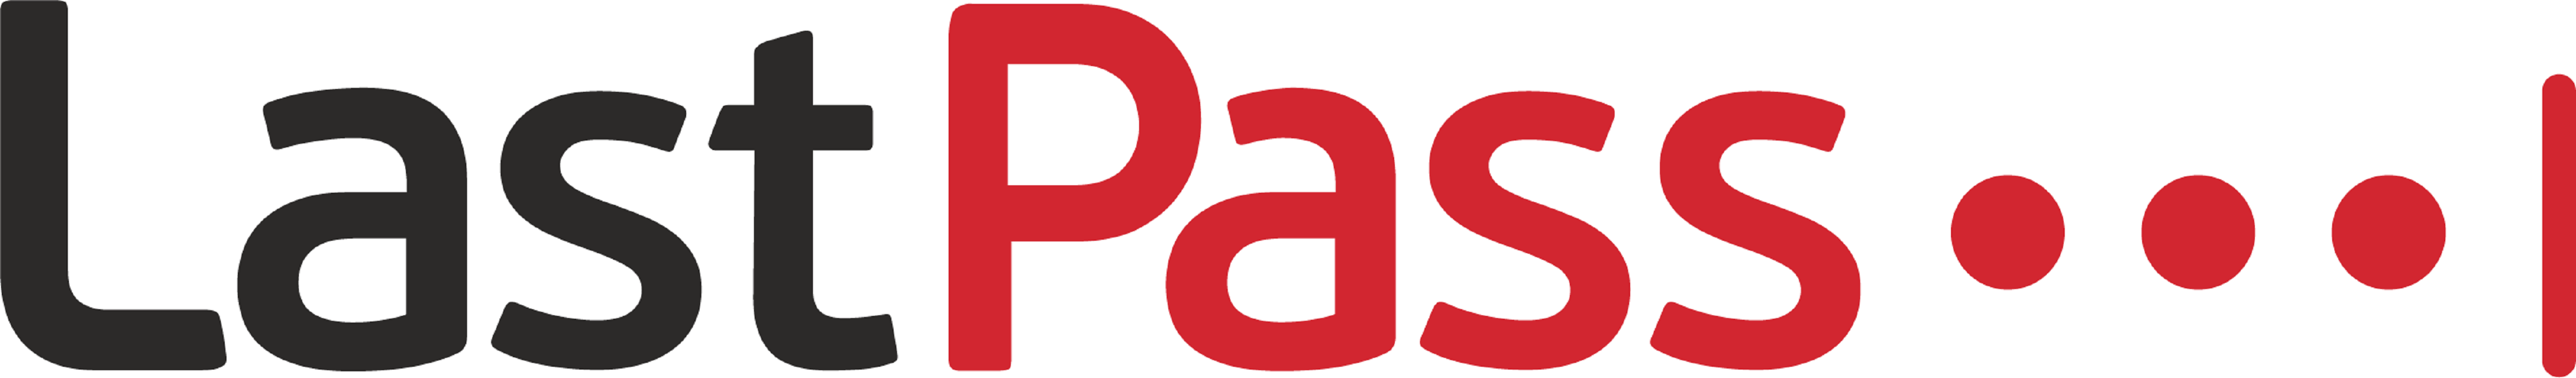 LastPass - Melhor gerenciador geral de senhas